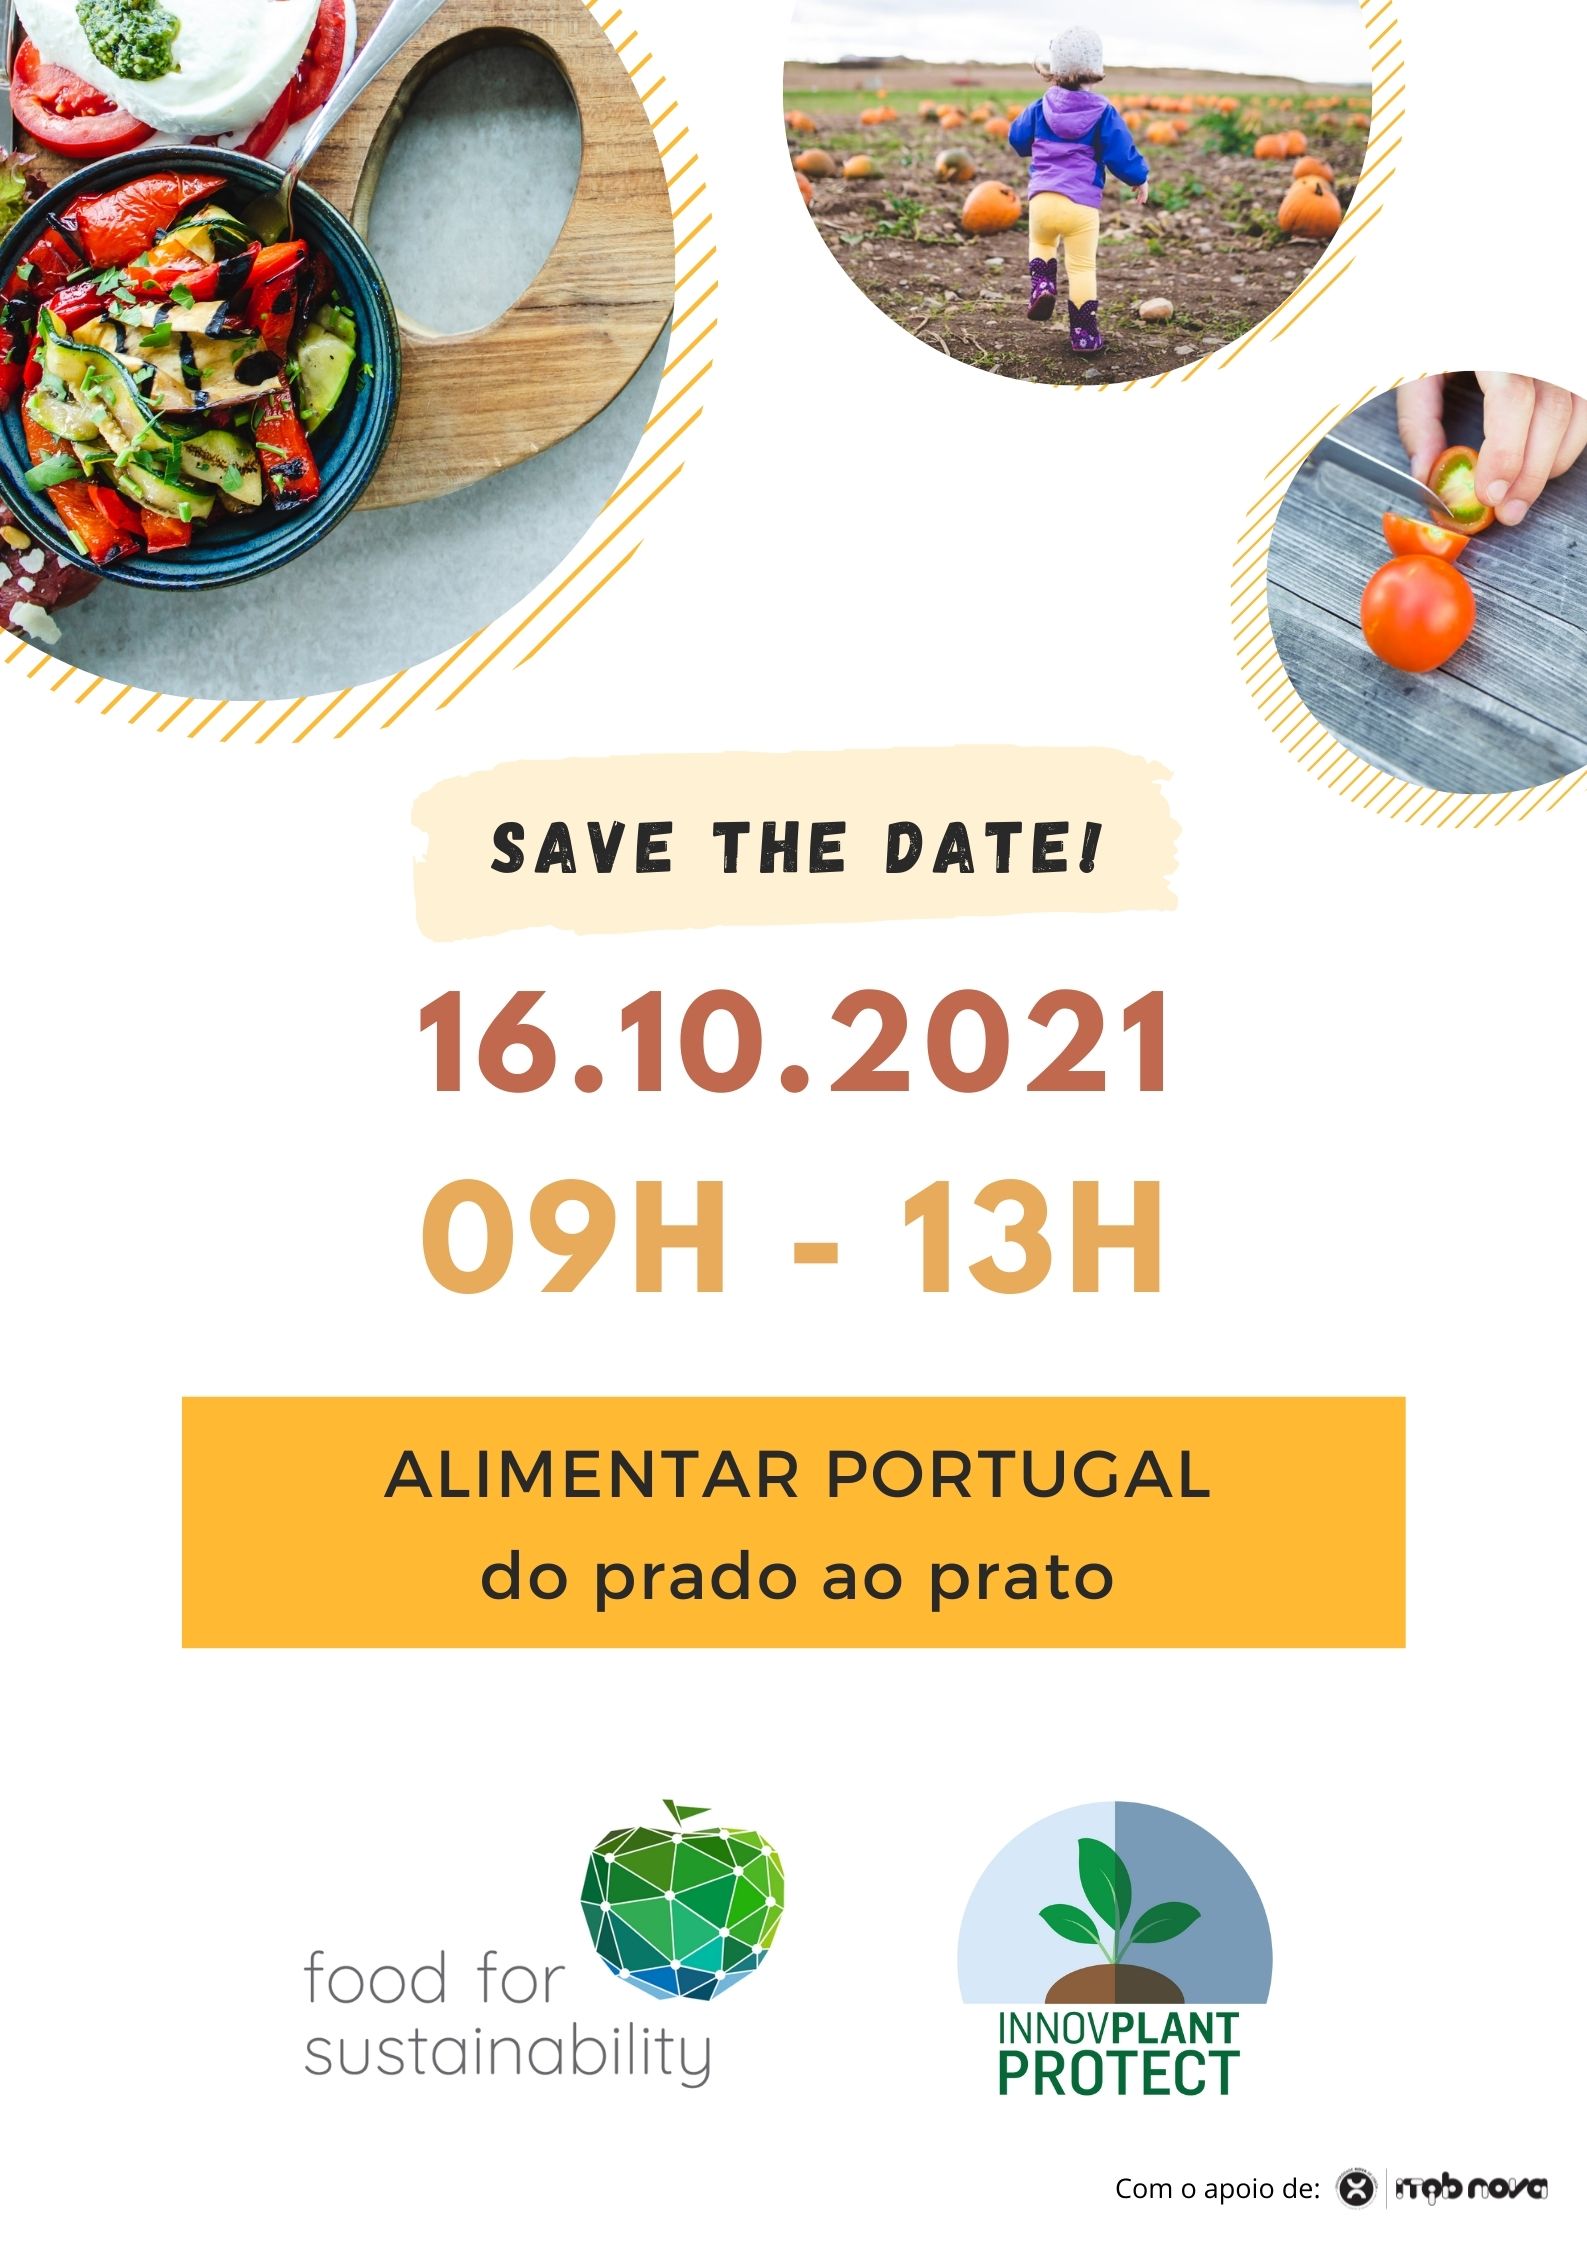 Alimentar Portugal Do Prado ao Prato